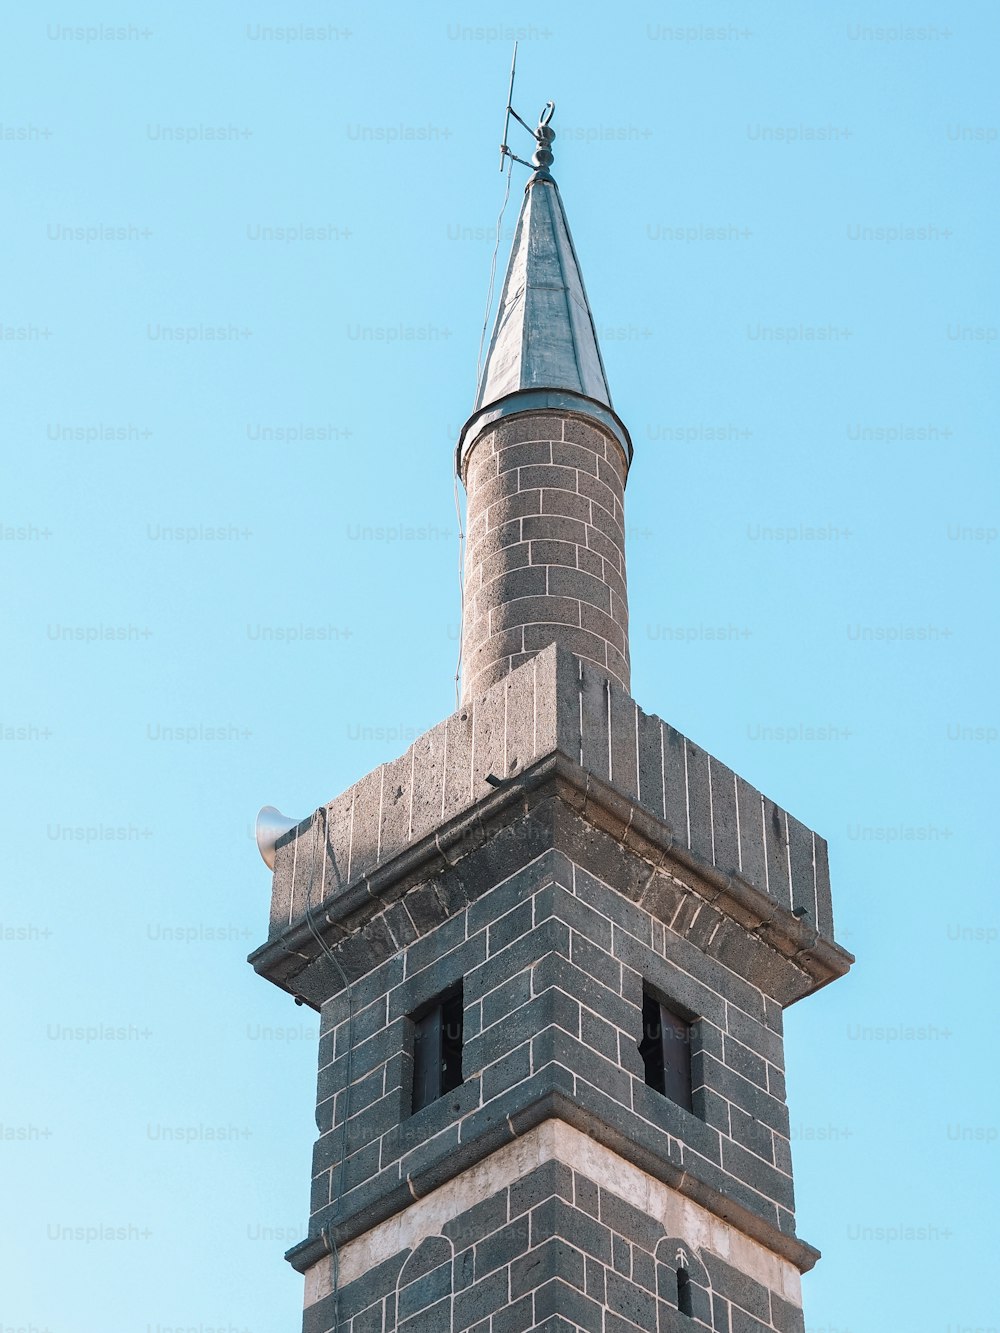 Una torre alta de ladrillo con una veleta en la parte superior